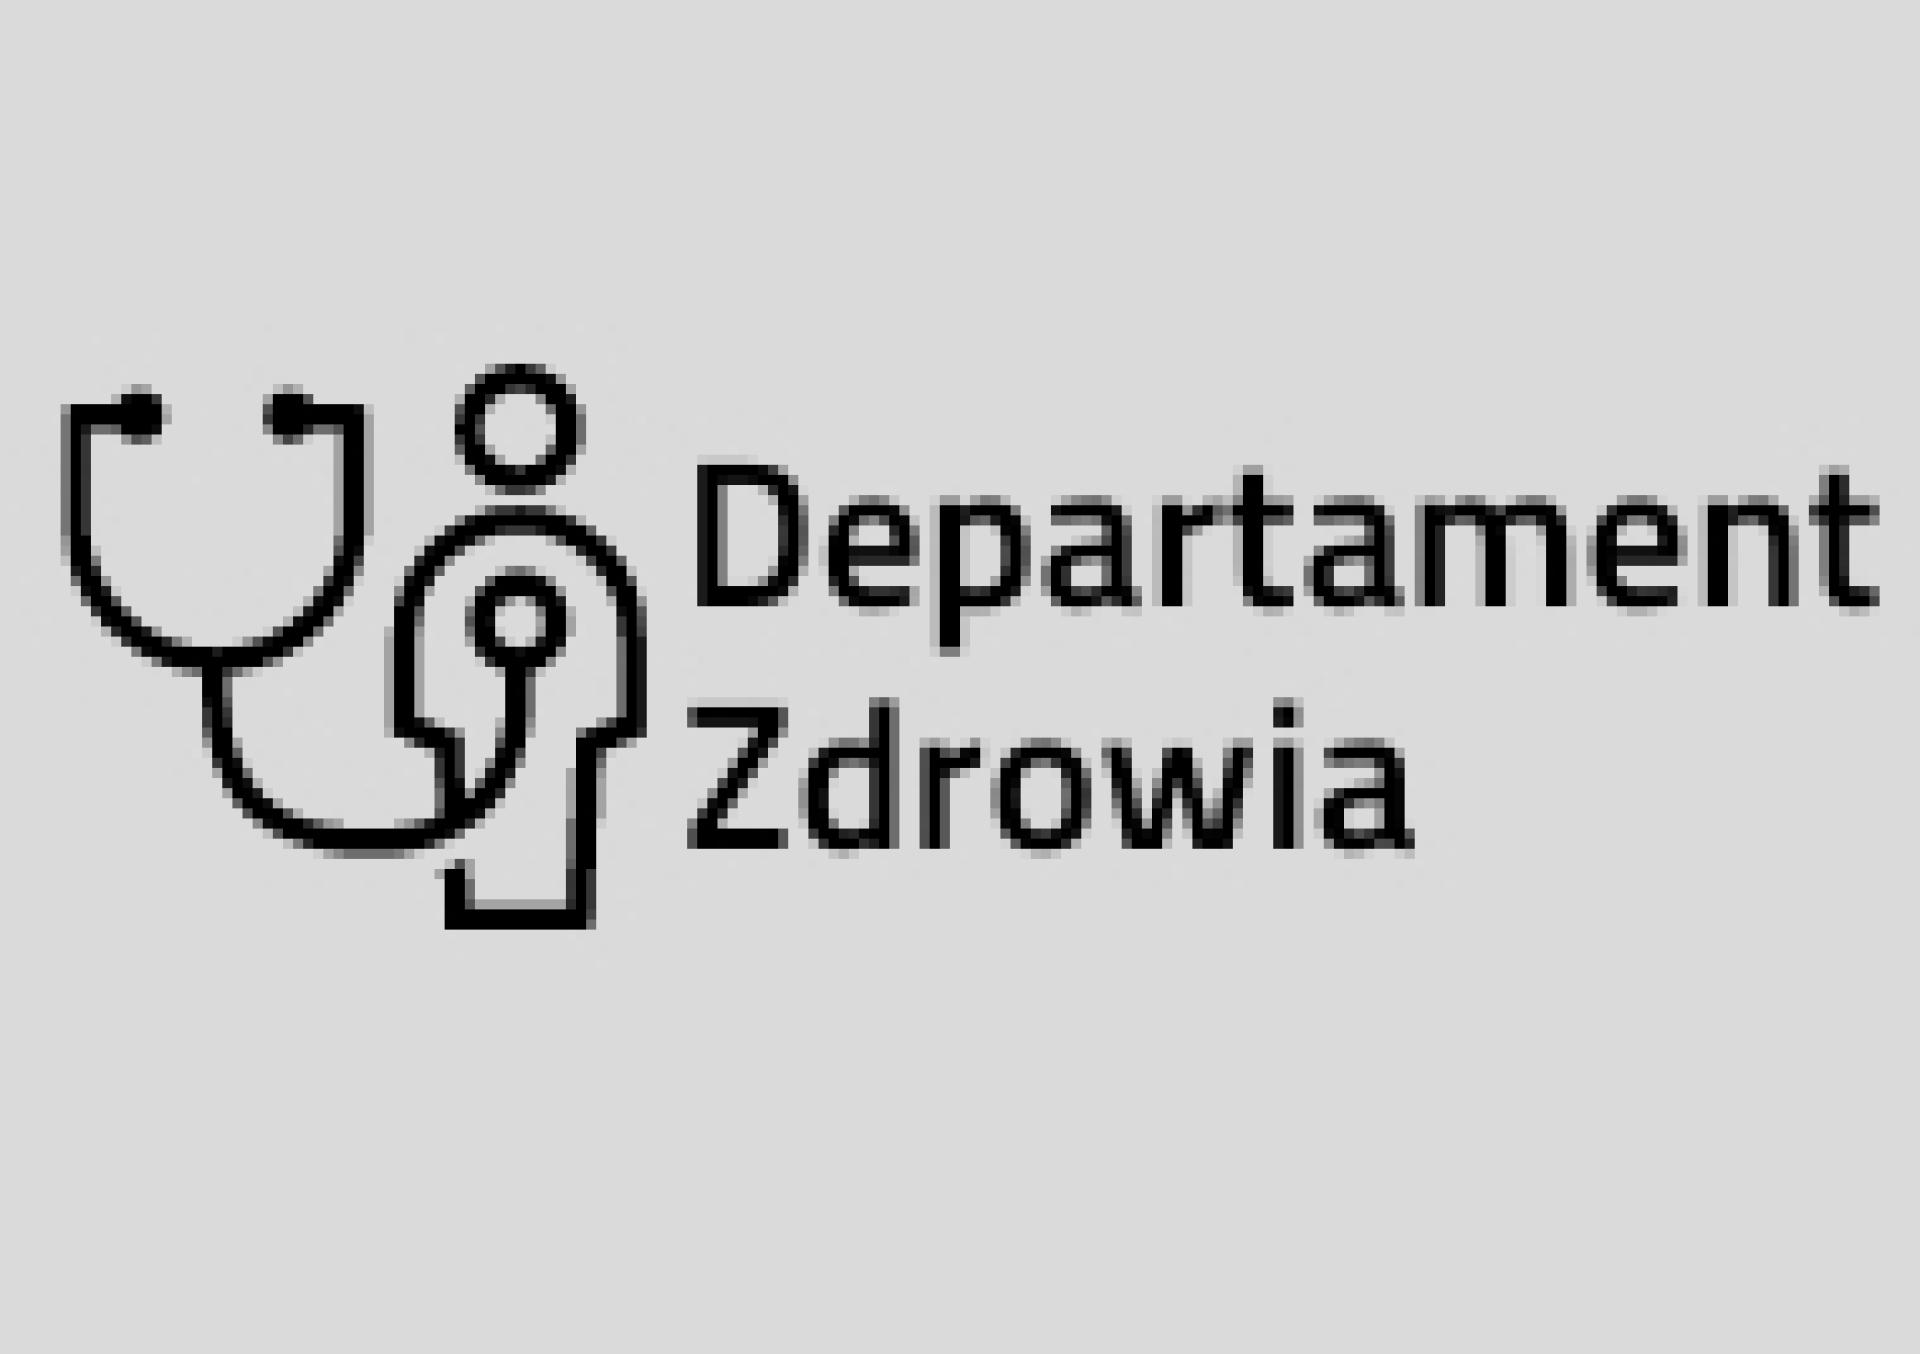 Konsultacje projektu zmian statutu Wielkopolskiemu Centrum Pulmonologii i Torakochirurgii w Poznaniu - zobacz więcej